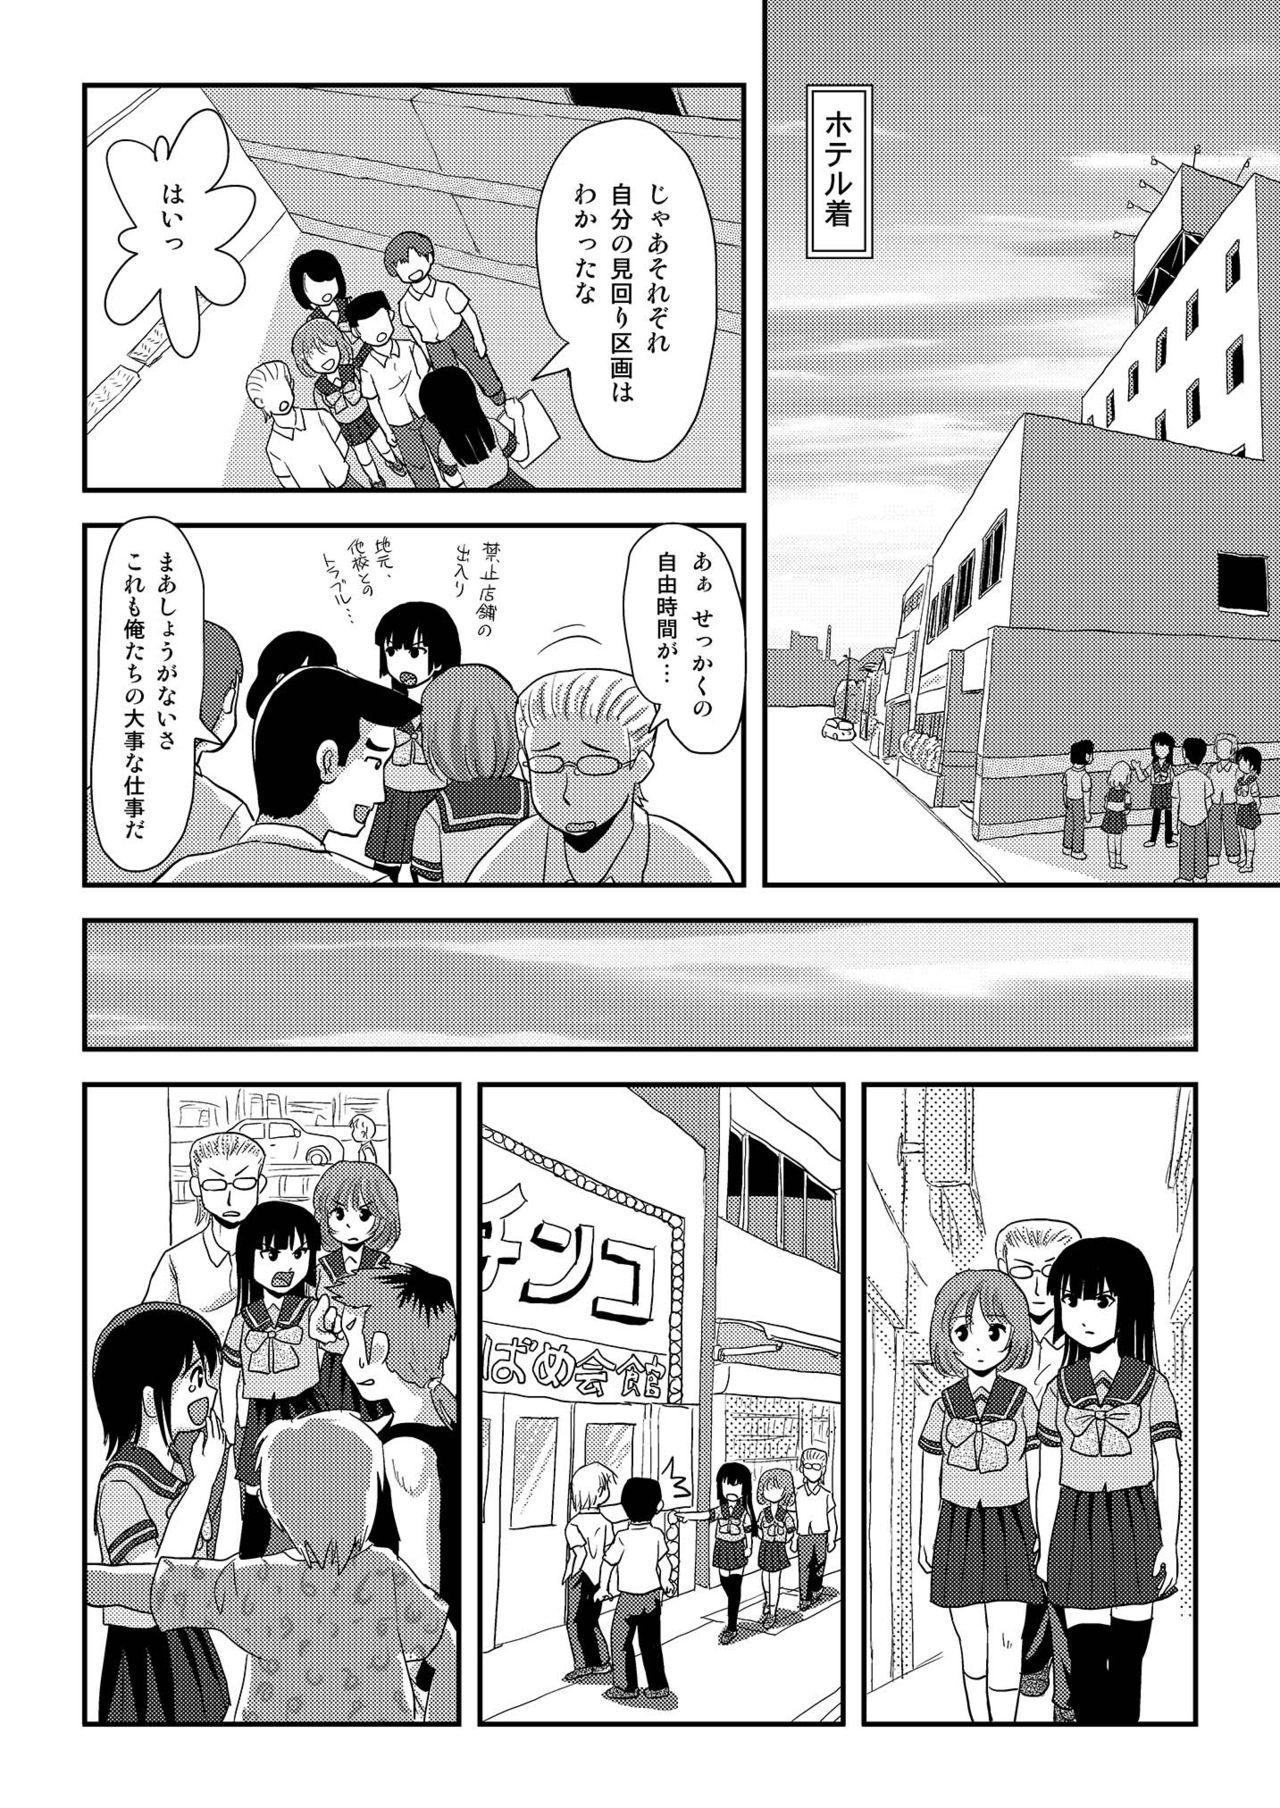 Doggystyle Sakura Kotaka no Roshutsubiyori 6 - Original Big Dicks - Page 10